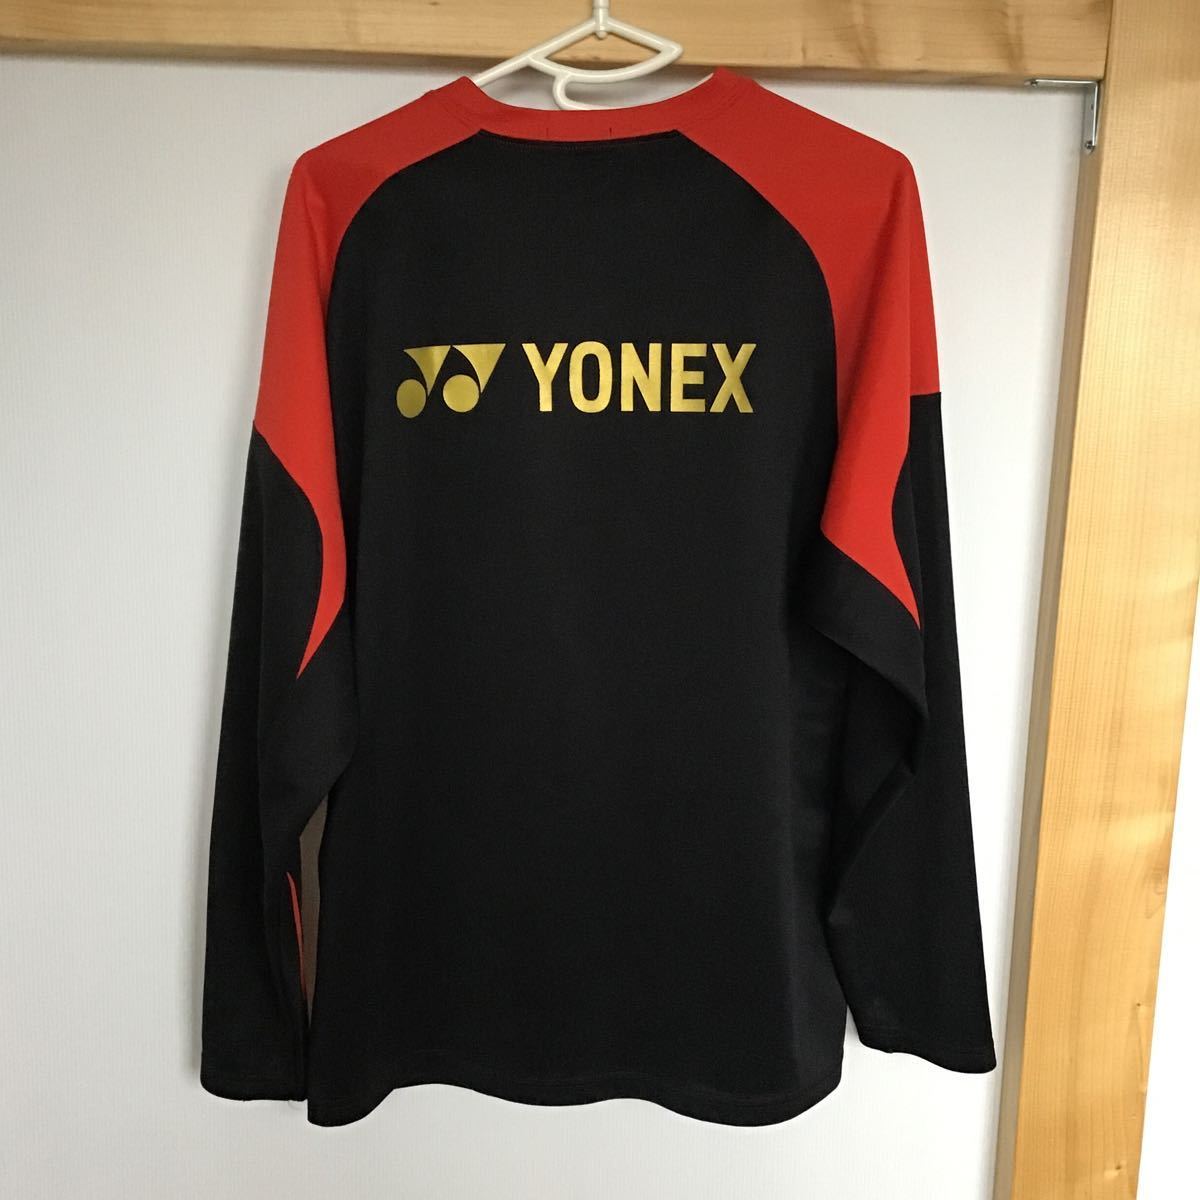  Yonex YONEX long sleeve T-shirt [ size M]